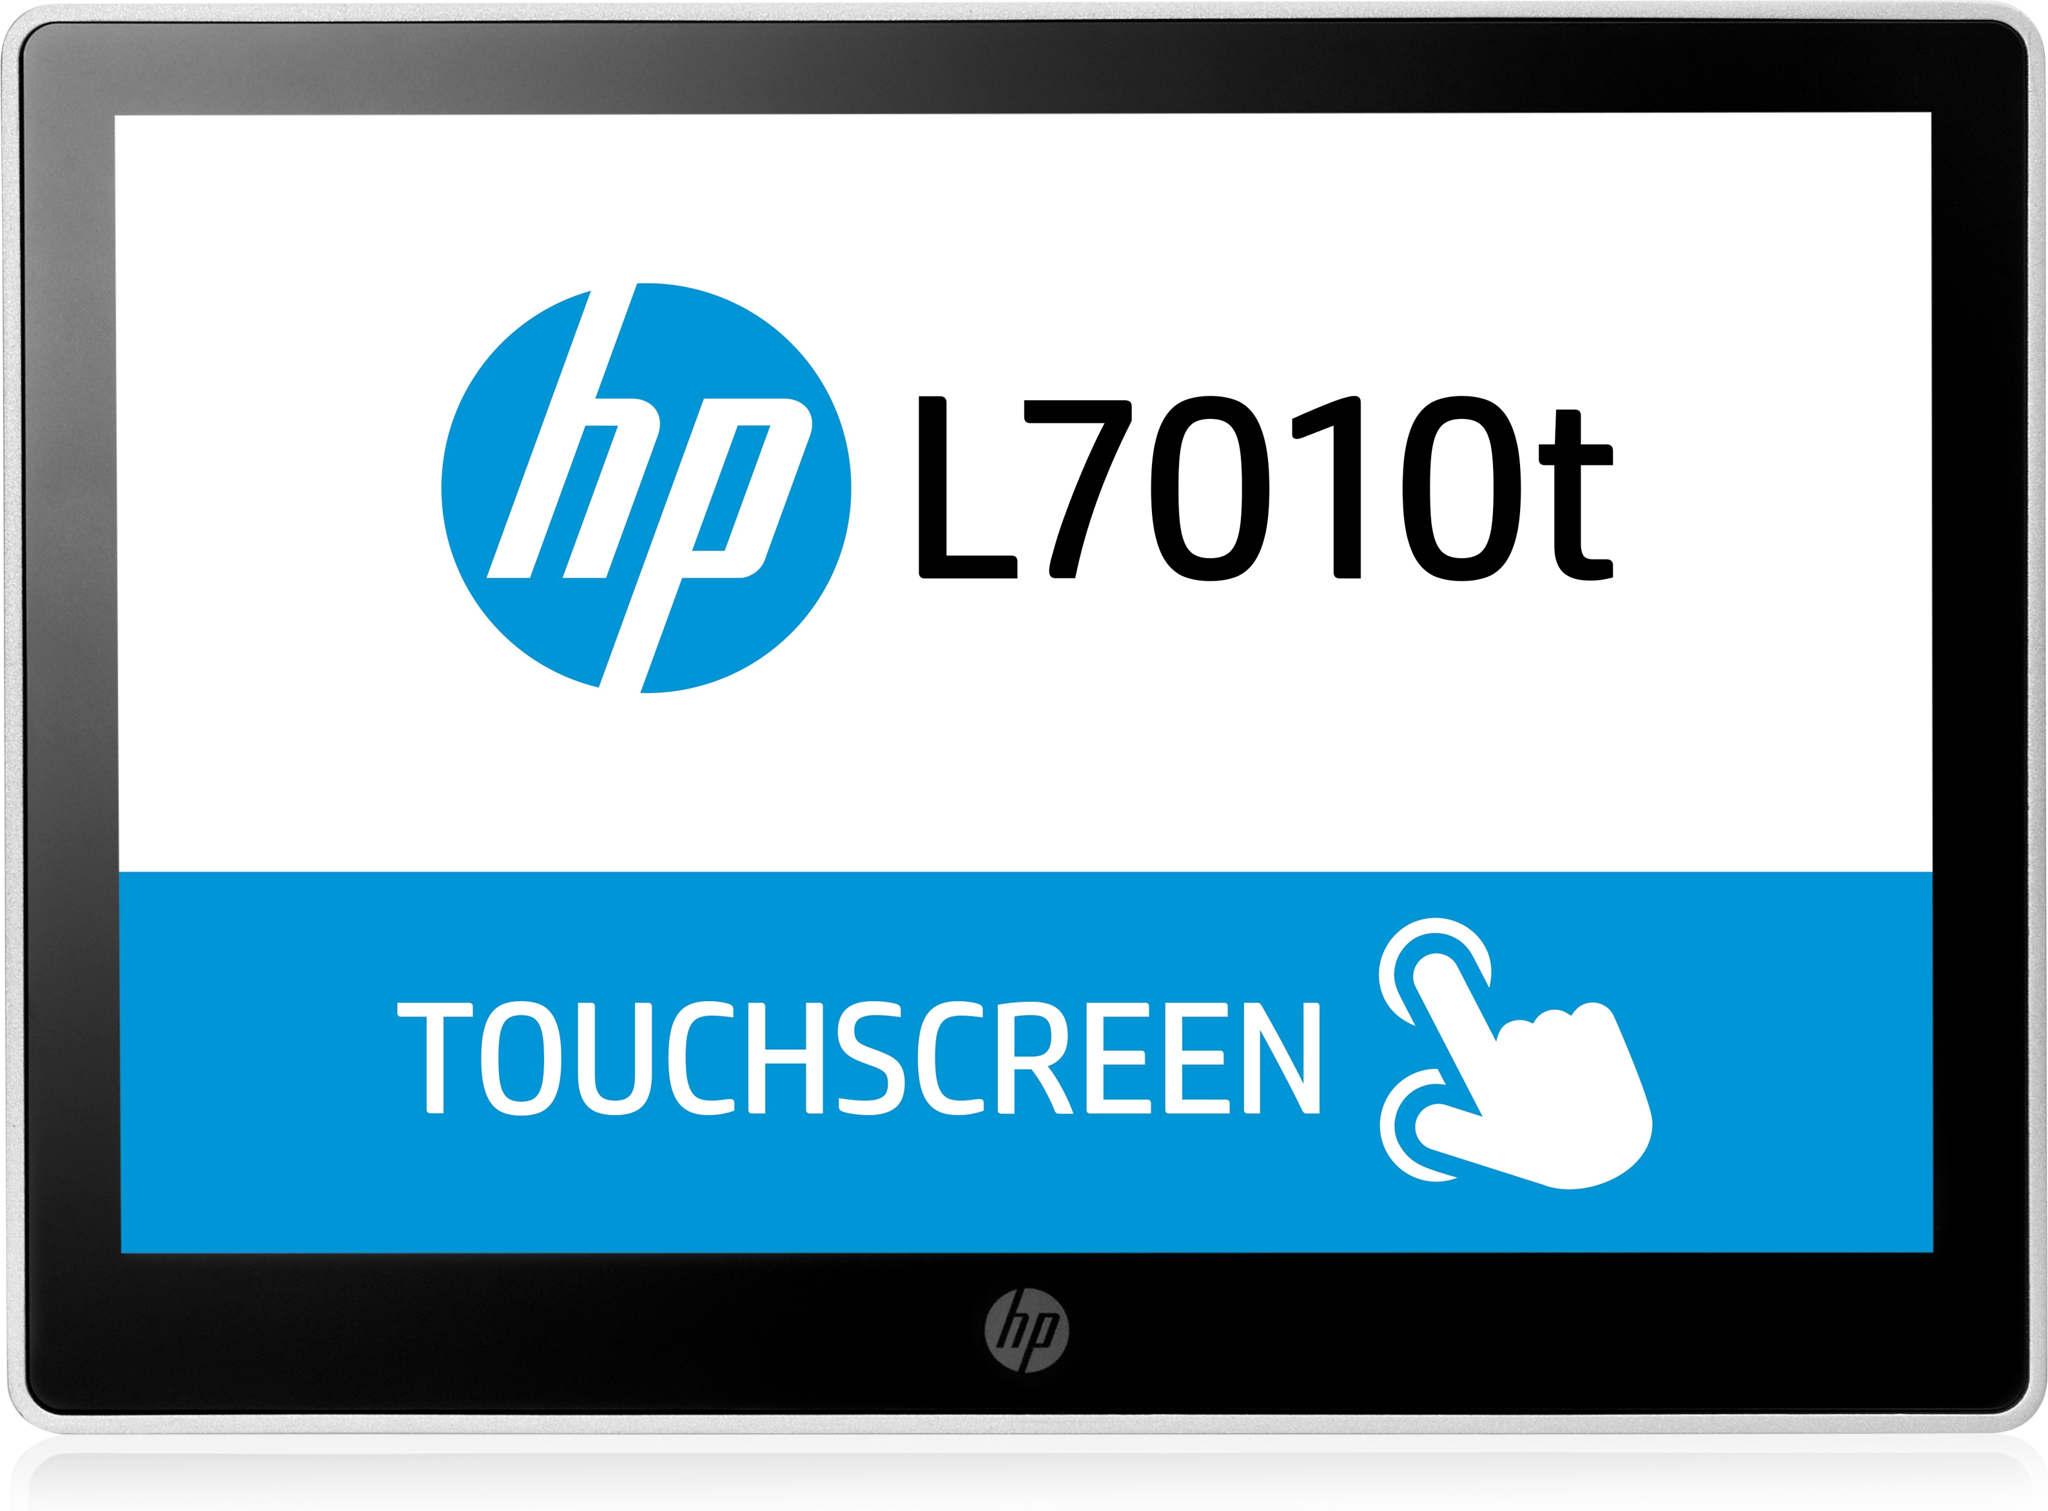 Bild von HP L7010t Retail Touch Monitor - LED-Monitor mit KVM-Switch - 25.7cm/10.1"